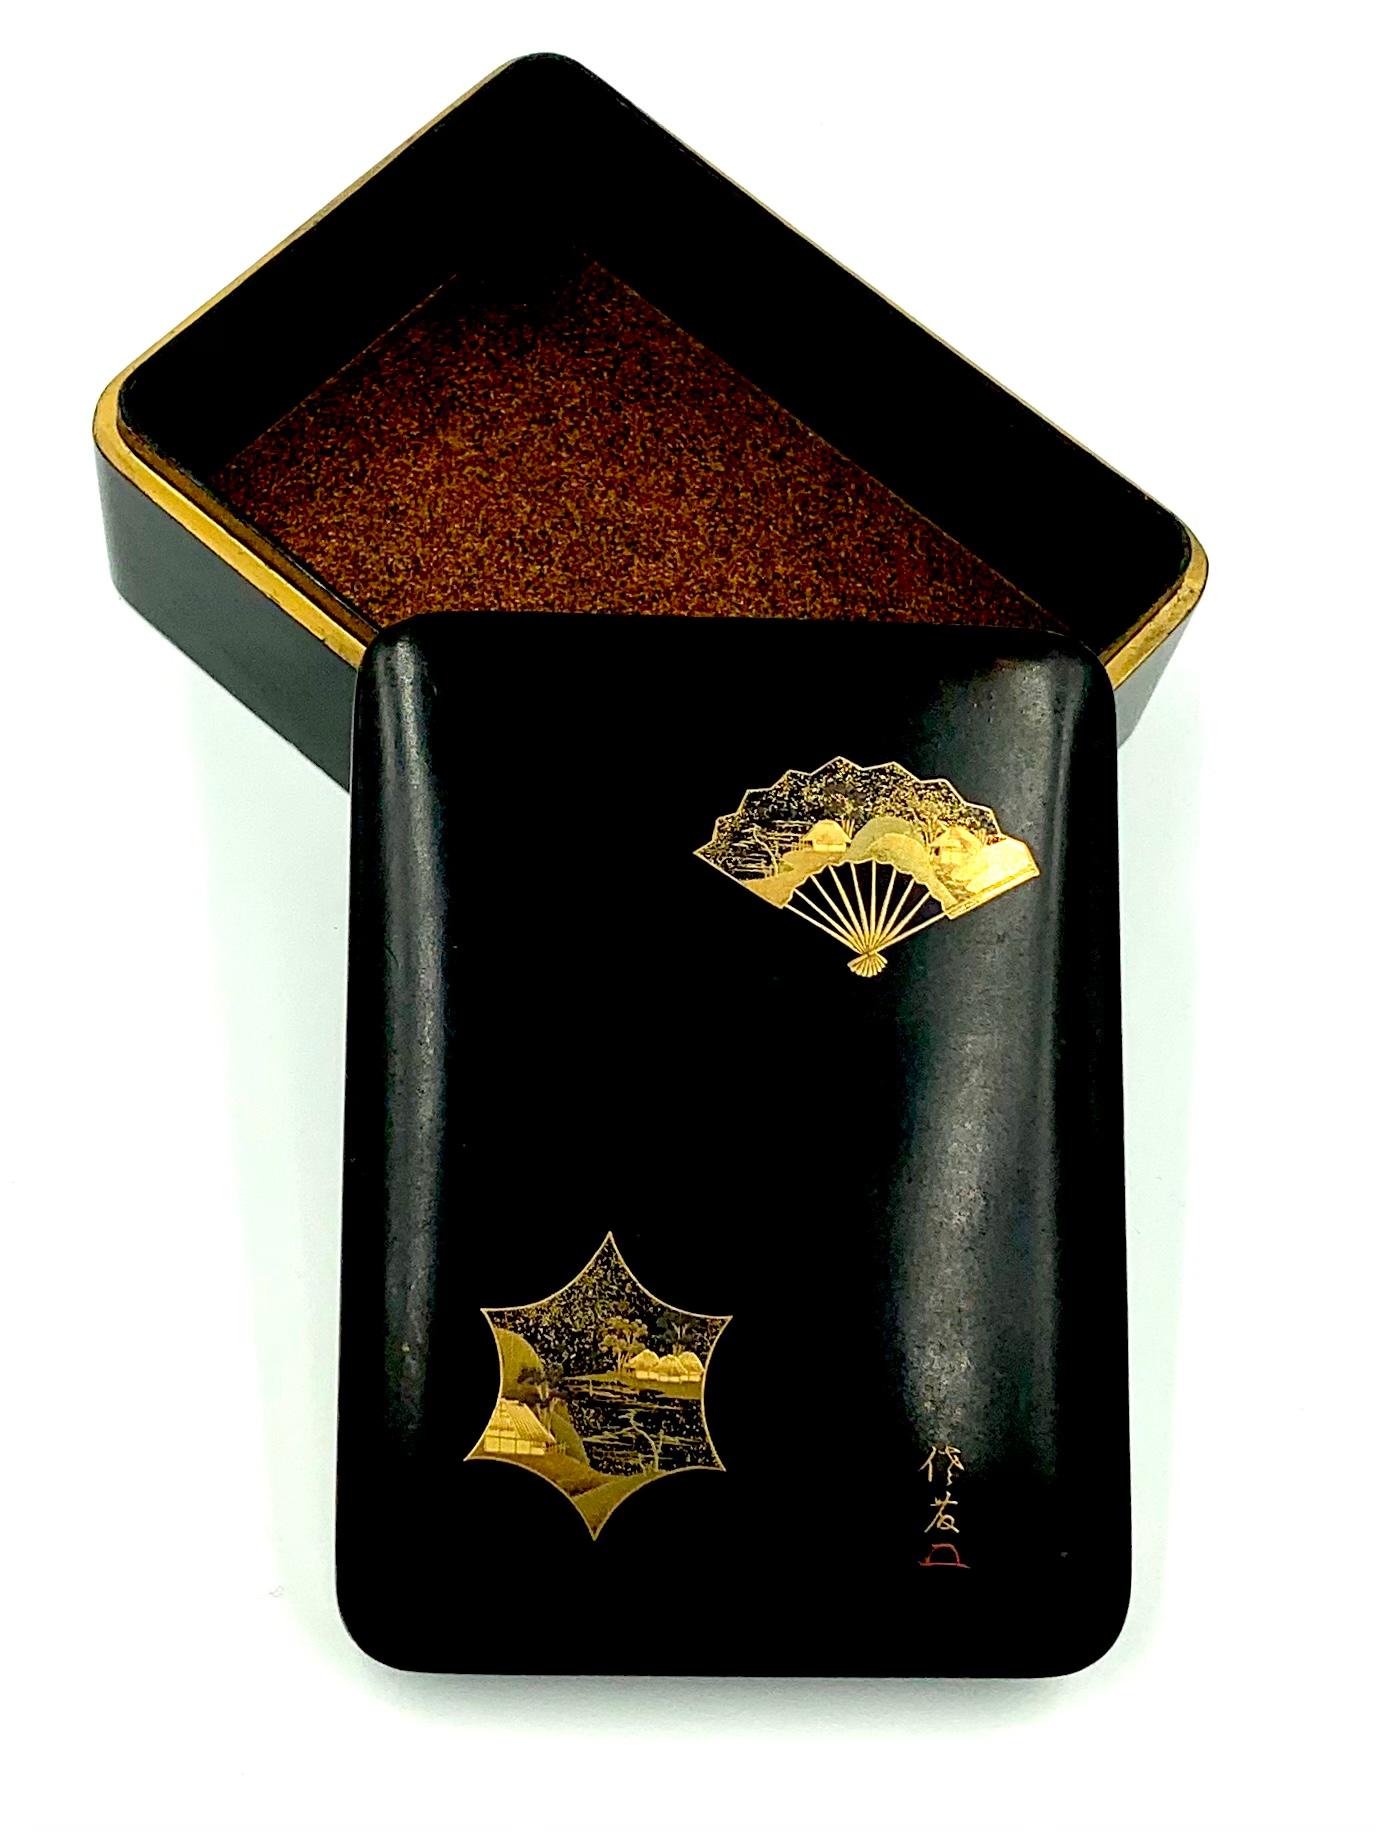 Belle boîte ancienne en laque japonaise de la période Meji, décorée d'un éventail et d'une fenêtre en forme d'étoile stylisée selon la technique maki-e. L'éventail dans le coin supérieur droit, entièrement ouvert, représente un paysage japonais